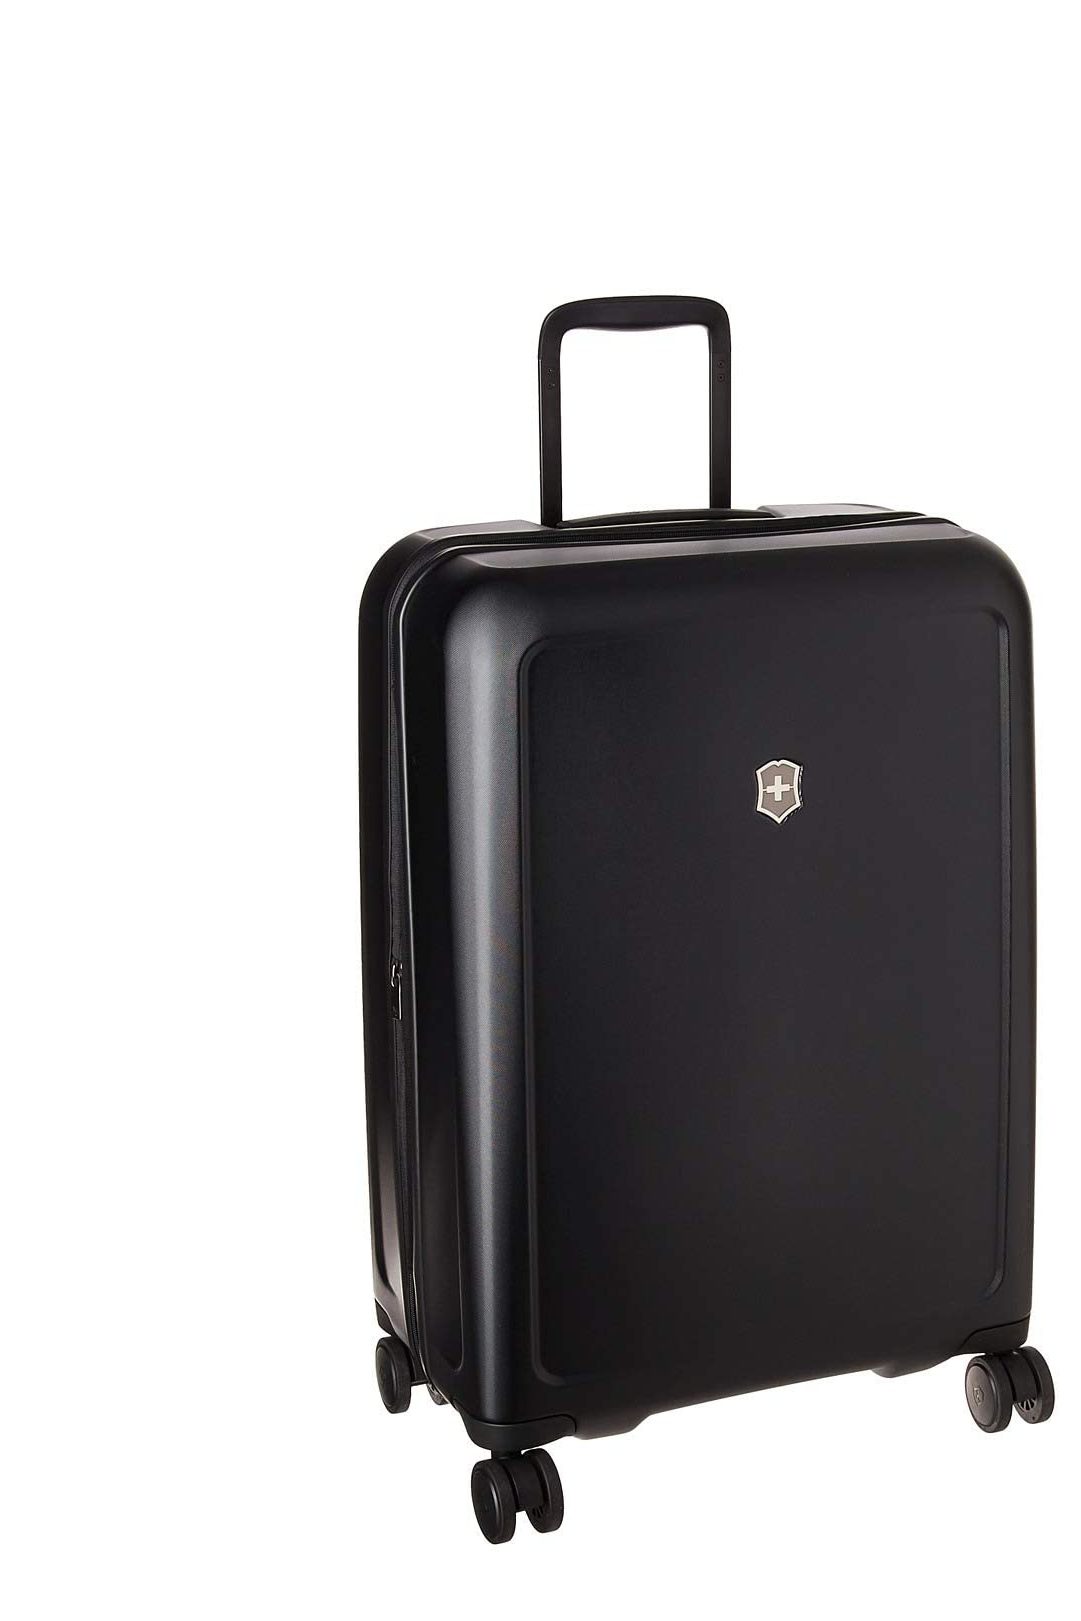 Las 10 mejores maletas expandibles | Esta web - 21